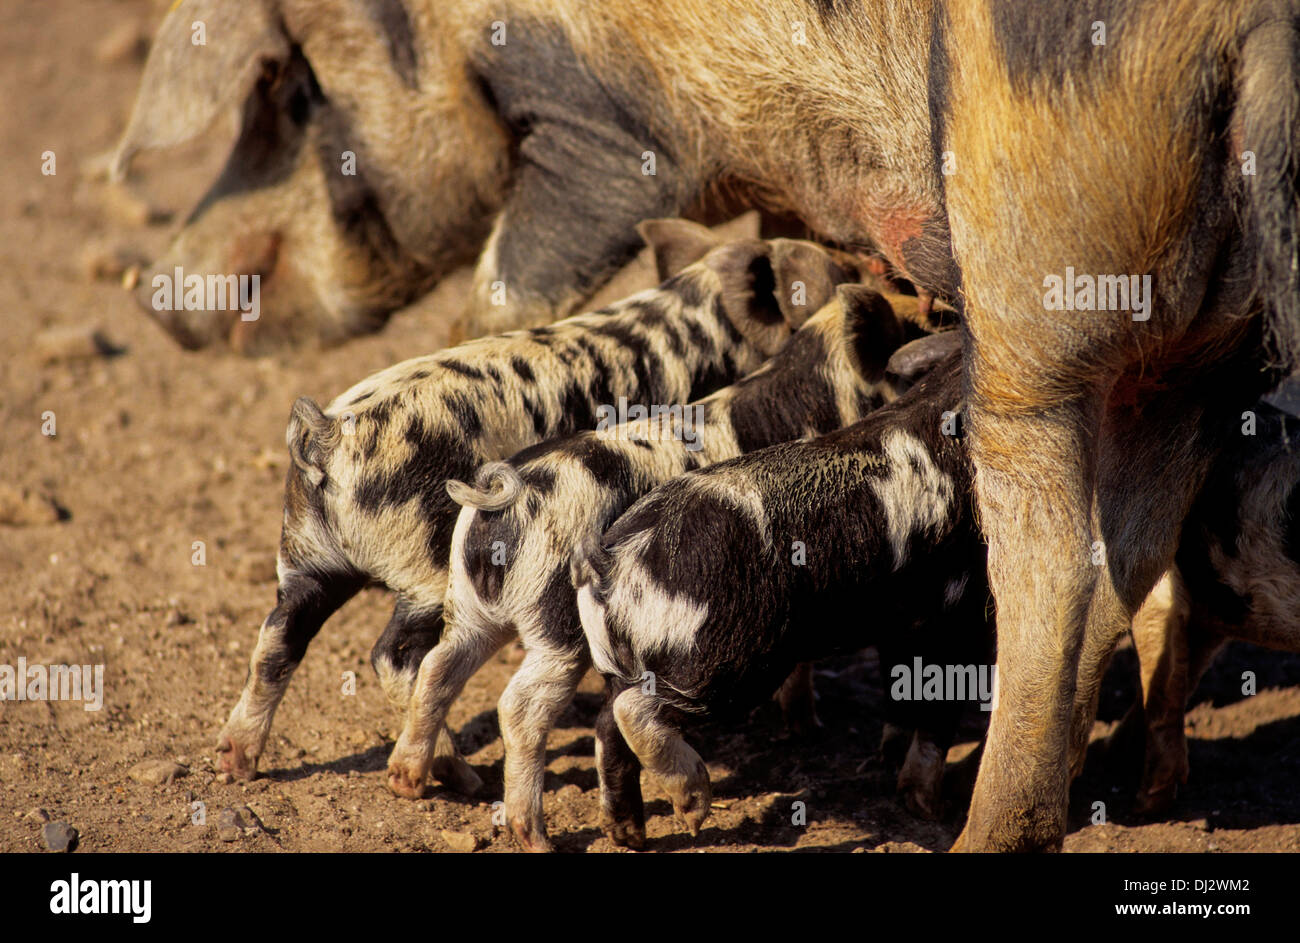 Turopolje-Schwein, Turopolje pig, Turopoljska svinja Stock Photo